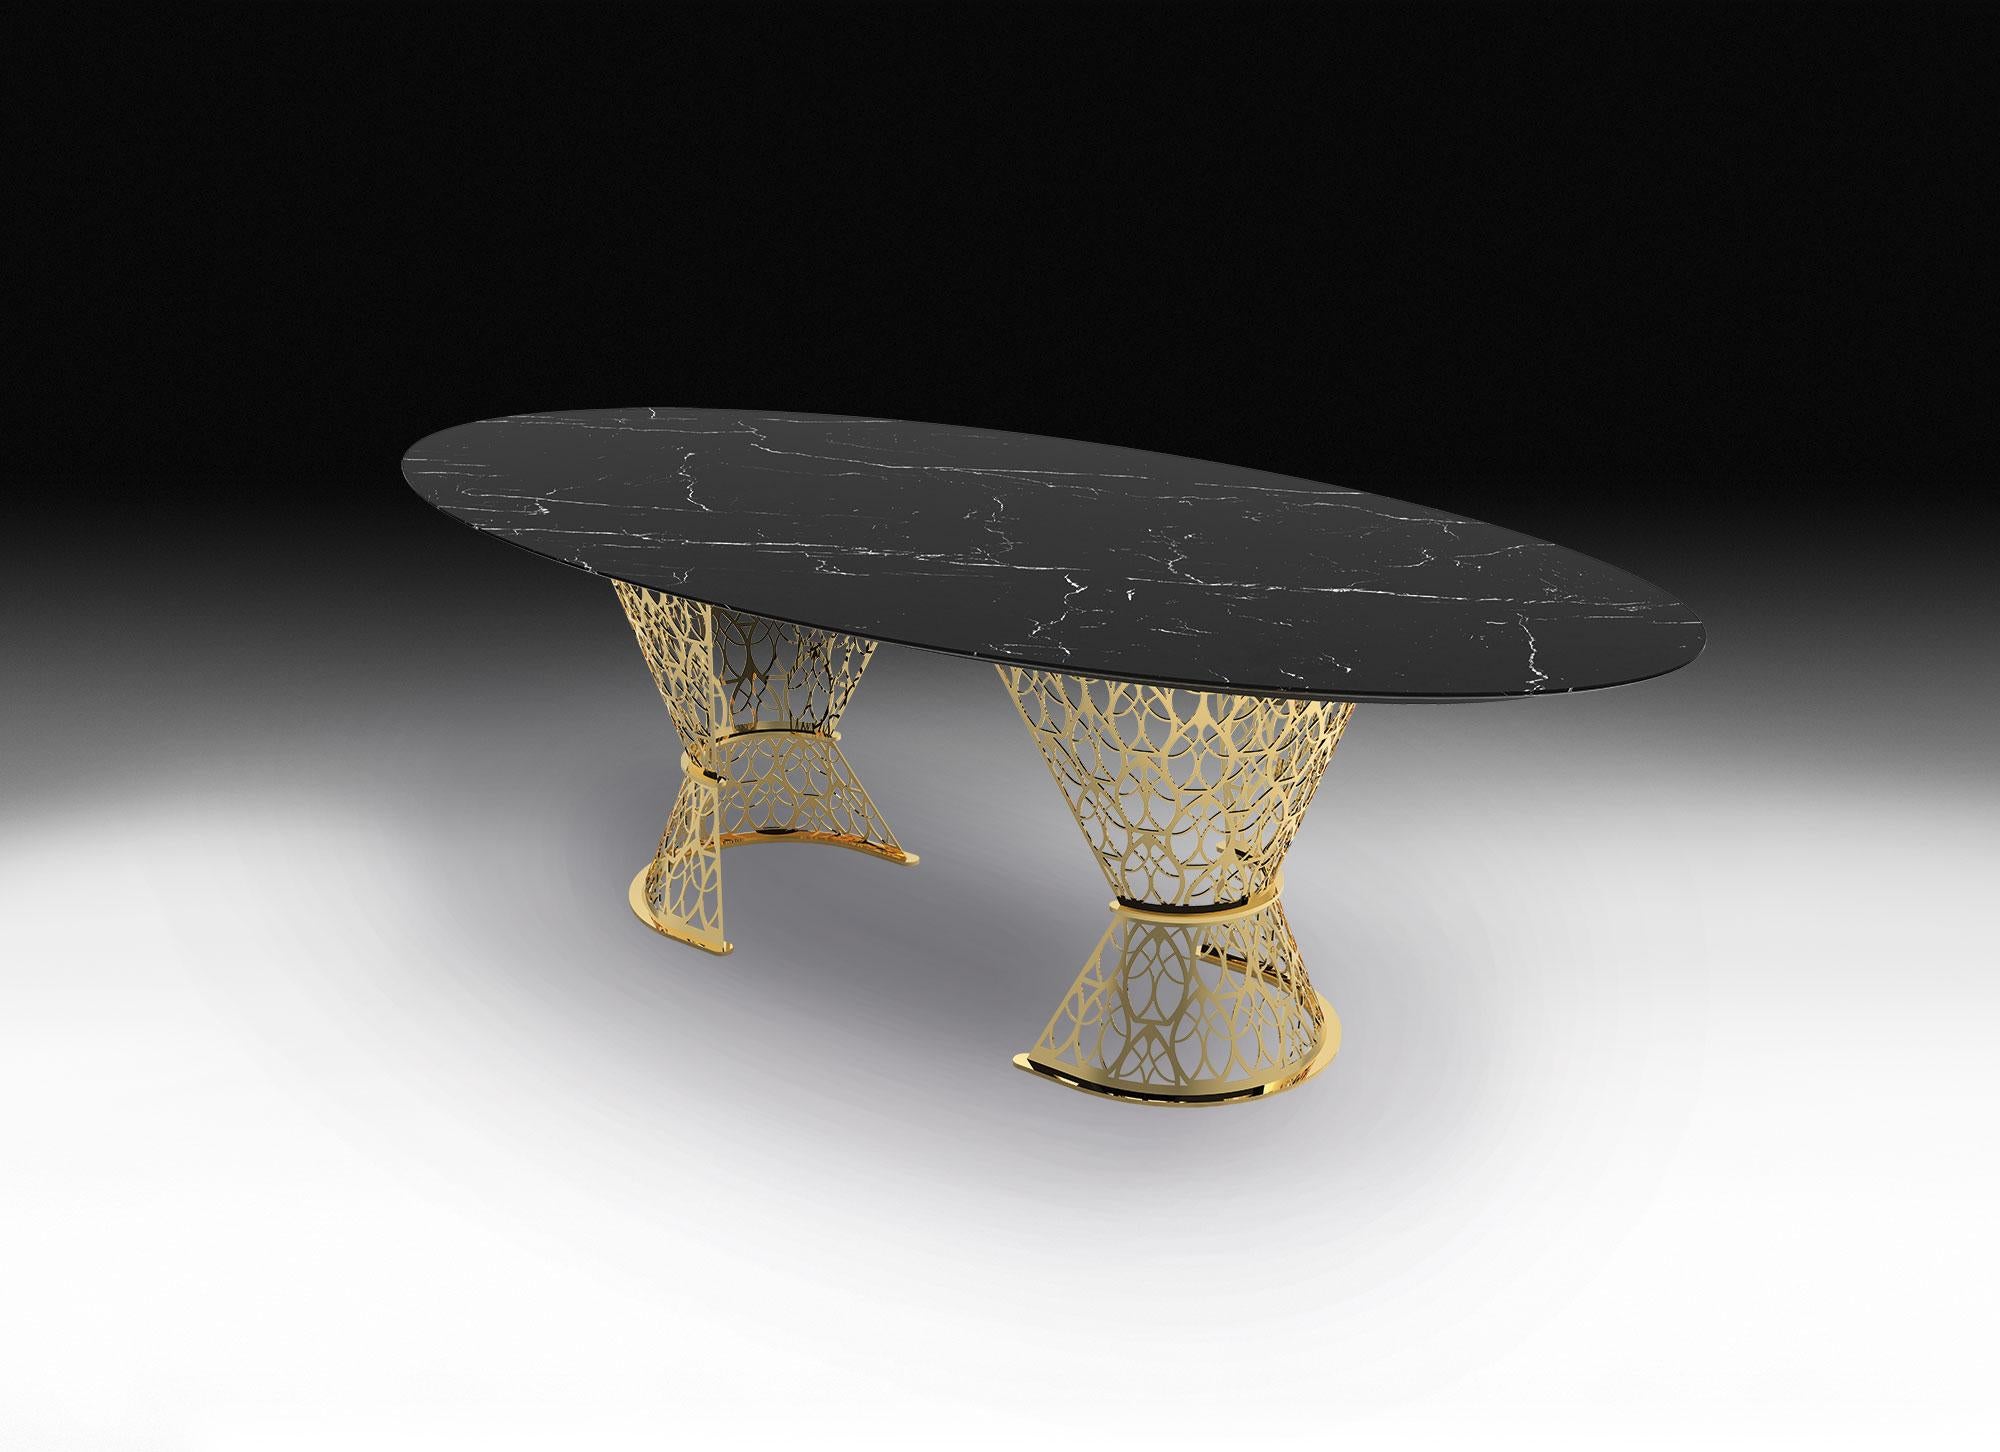 Selbst in der stilvollsten Atmosphäre wirkt Gatsby wie ein luxuriöser und majestätischer Tisch, der die Blicke auf sich zieht.

Die unerwartete Mischung aus Marmor und perforiertem Metall erweckt einen beeindruckenden Tisch zum Leben, bei dem selbst